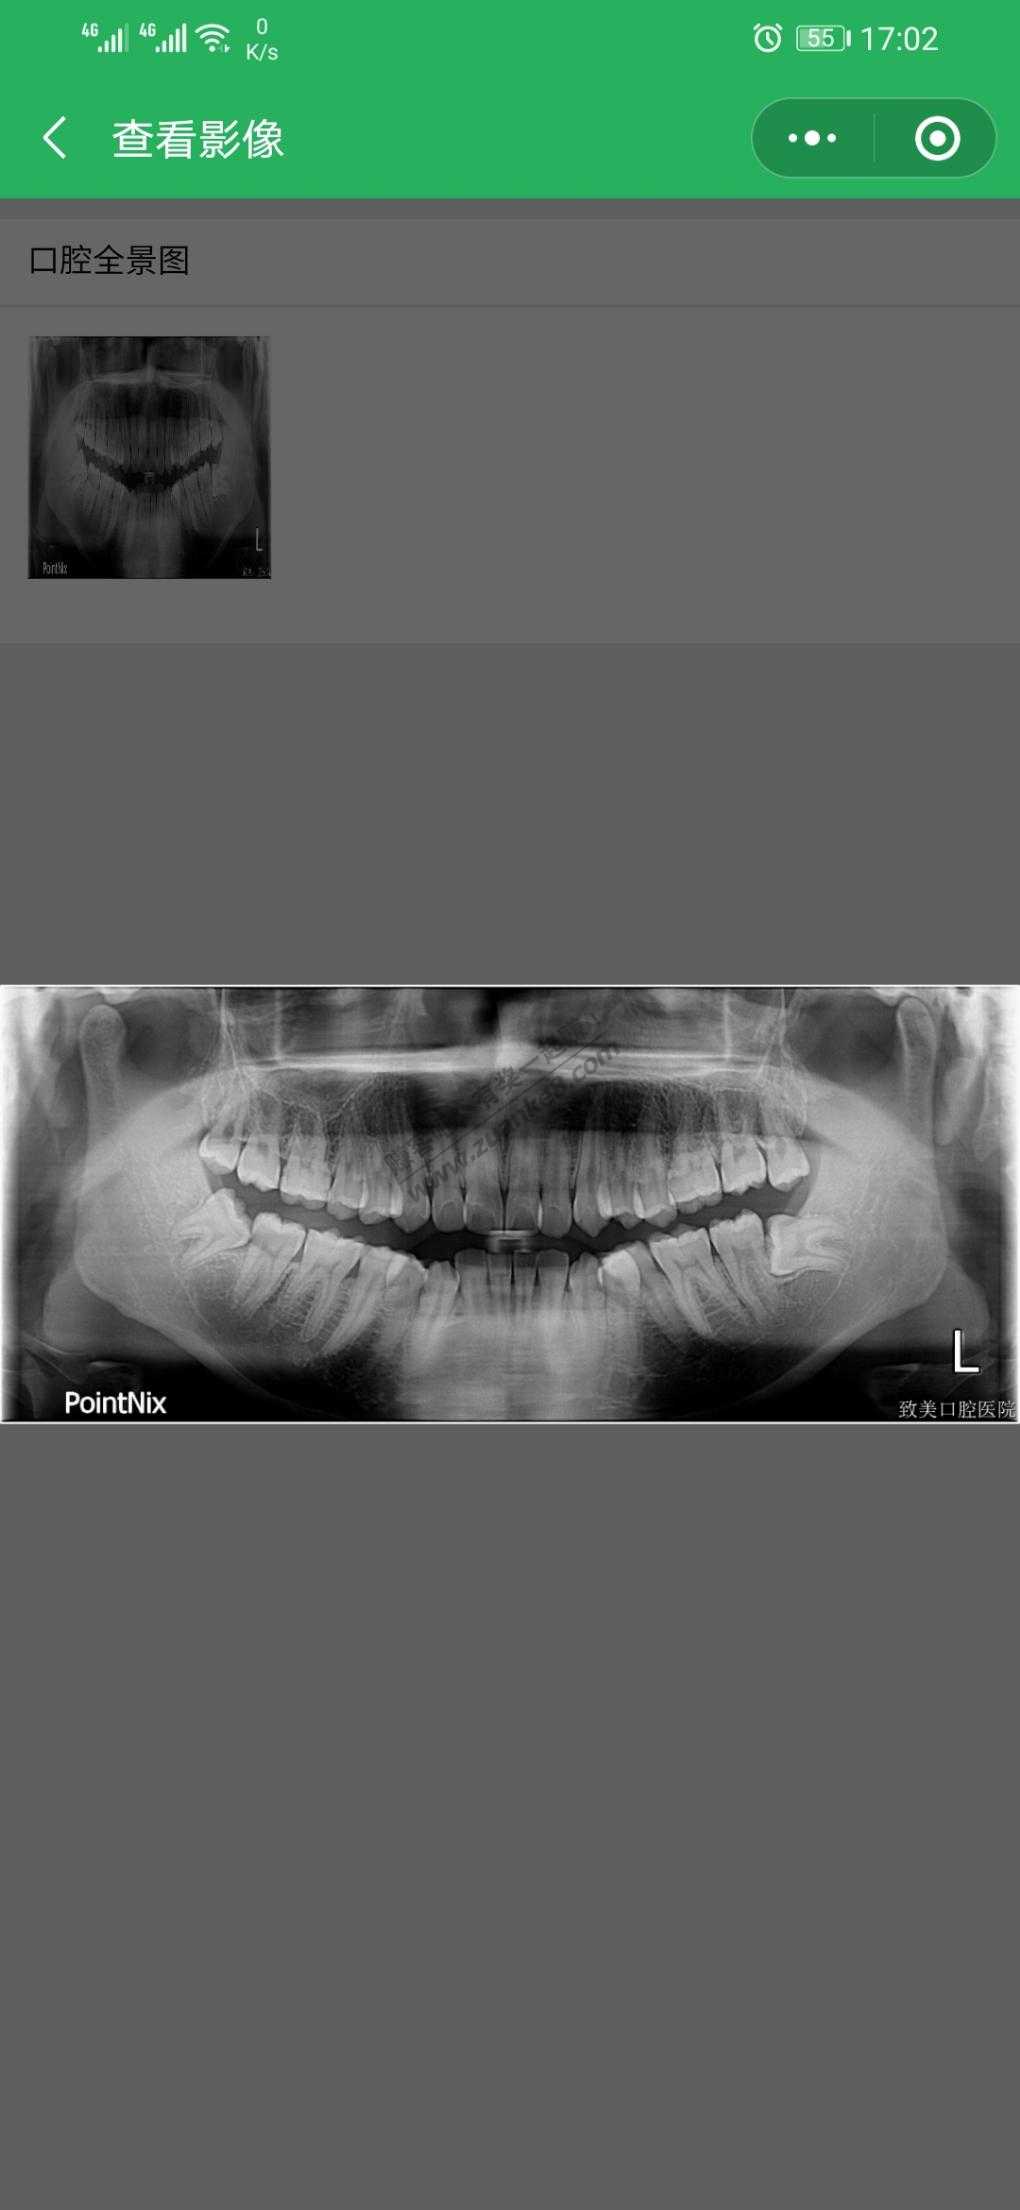 我找到了19年洗牙拍片的智齿了。。。恐怖-惠小助(52huixz.com)